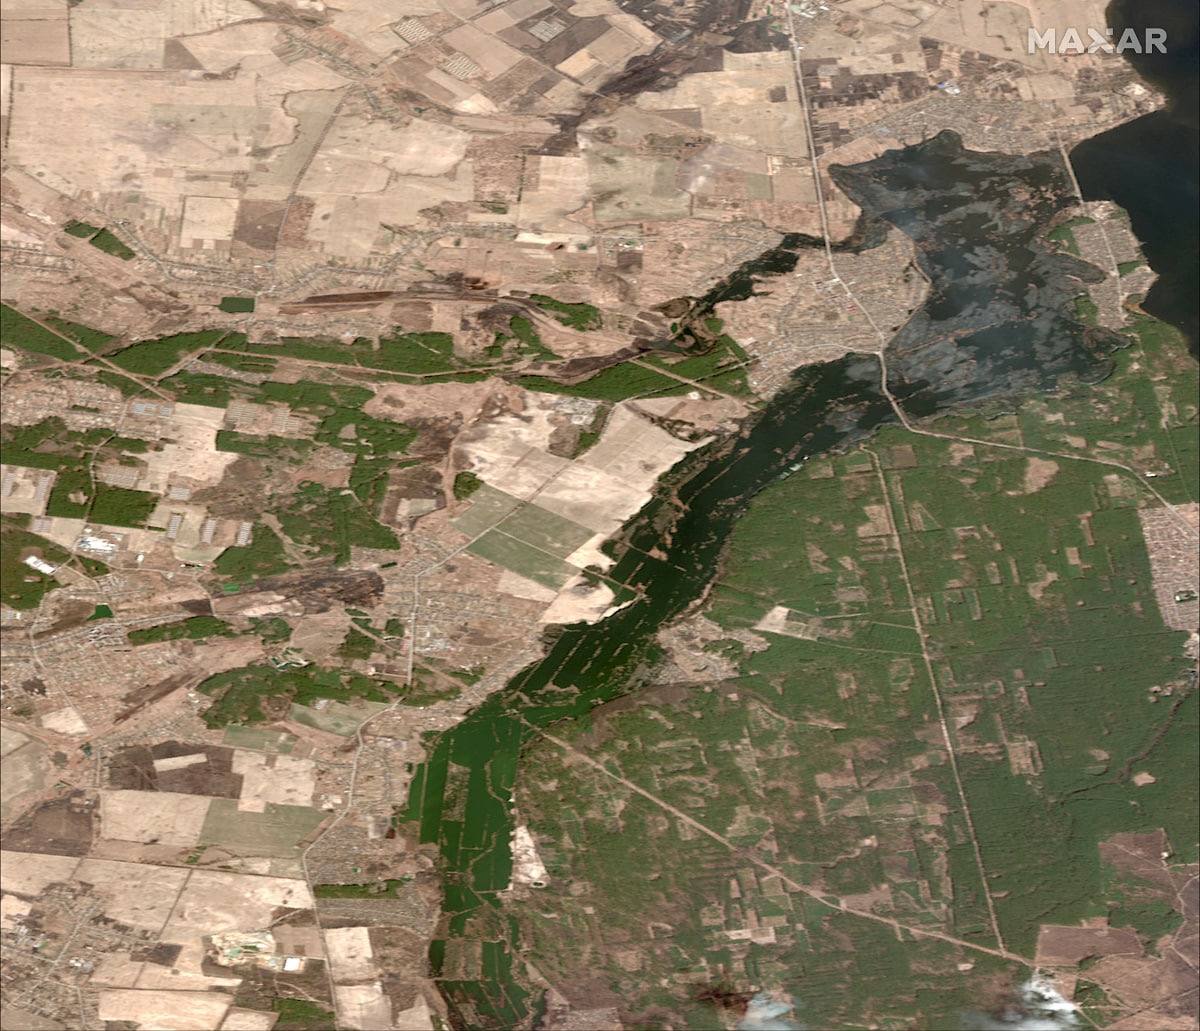 спутниковые снимки американской компании Maxar показывают зону затопления в районе населенного пункта Козаровичи под Киевом